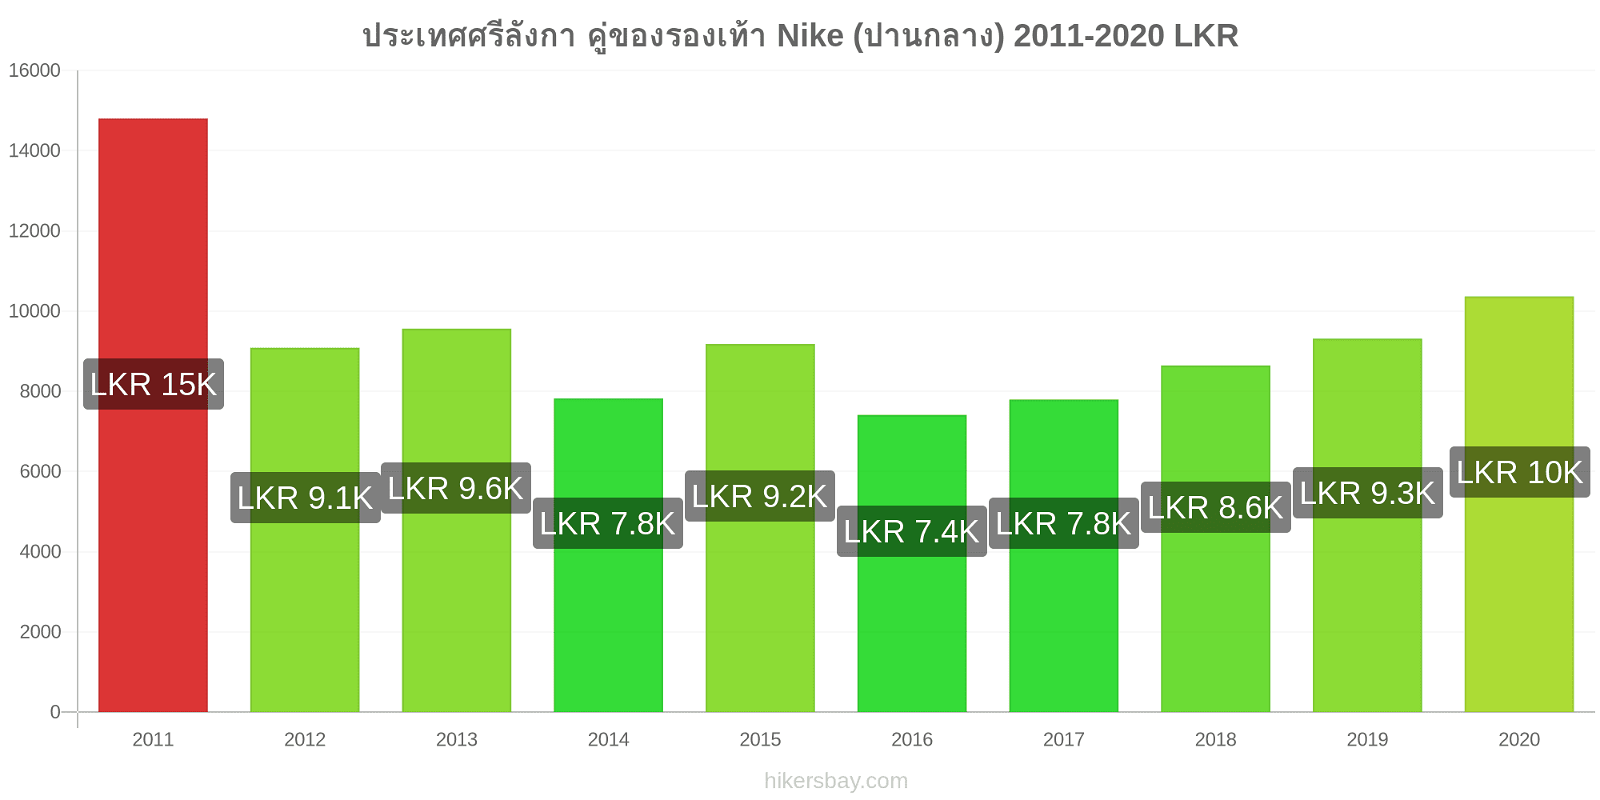 ประเทศศรีลังกา การเปลี่ยนแปลงราคา คู่ของรองเท้า Nike (ปานกลาง) hikersbay.com